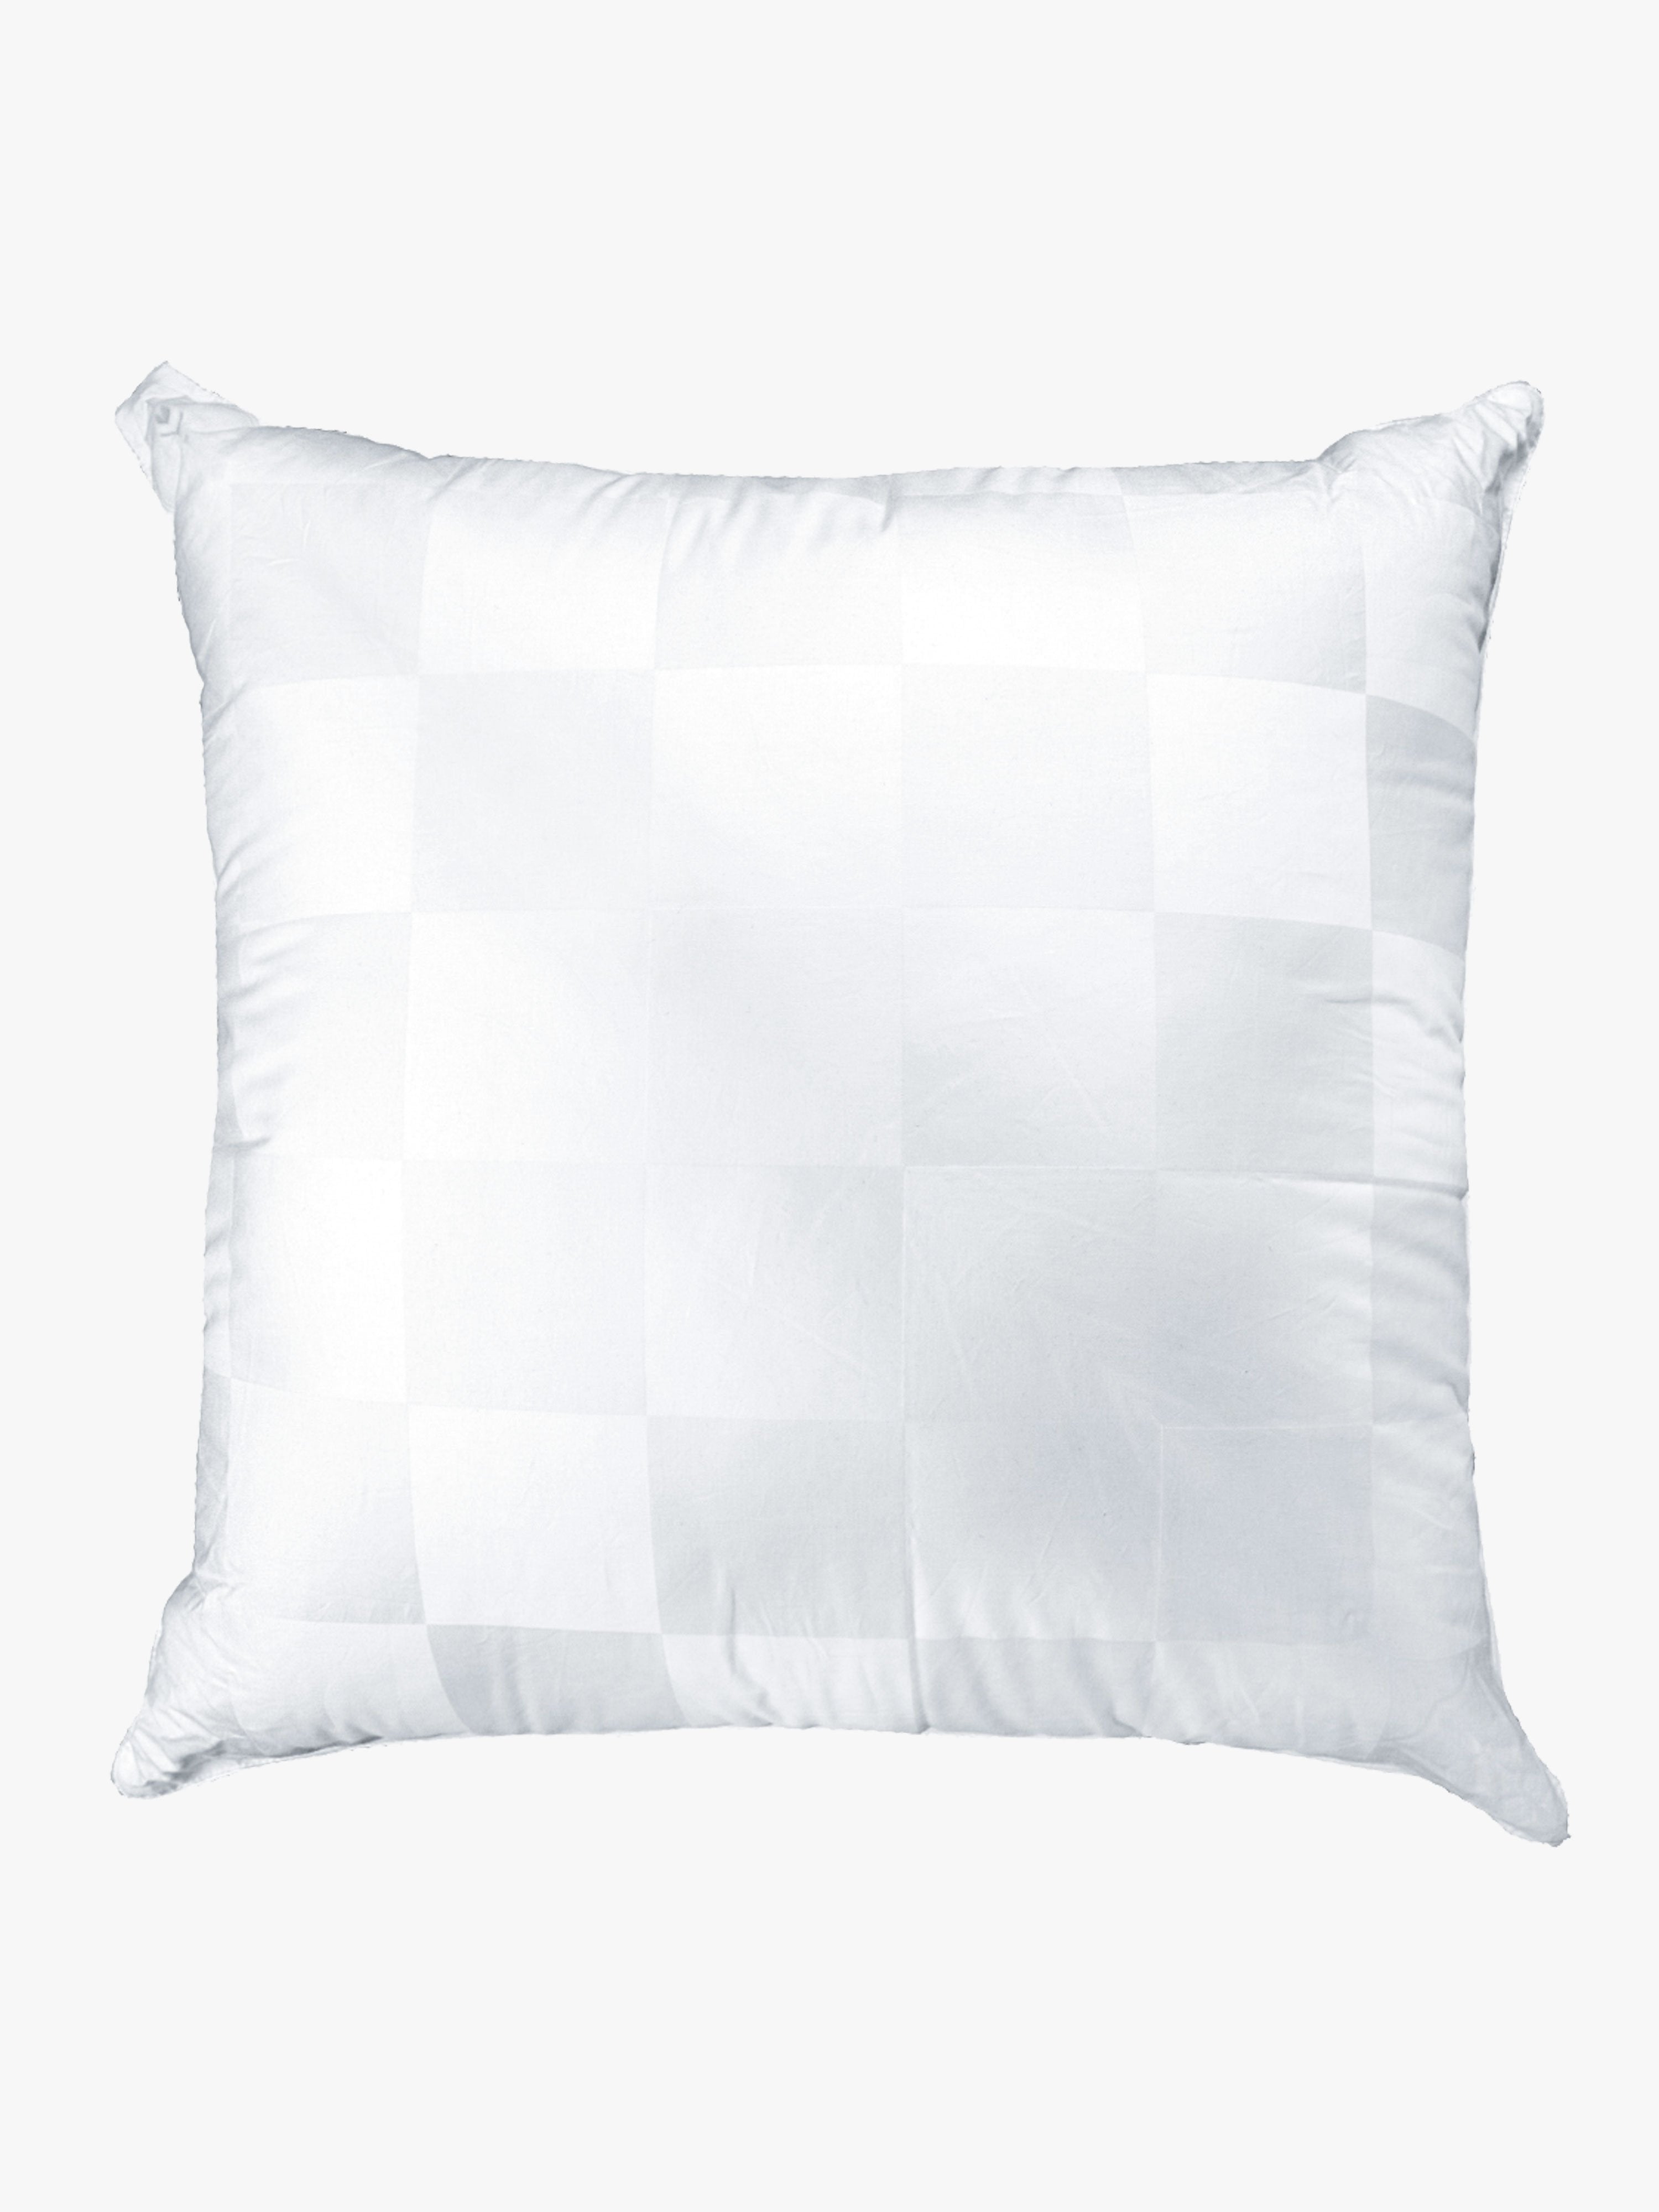 European Pillow Insert Insert L&M Home 